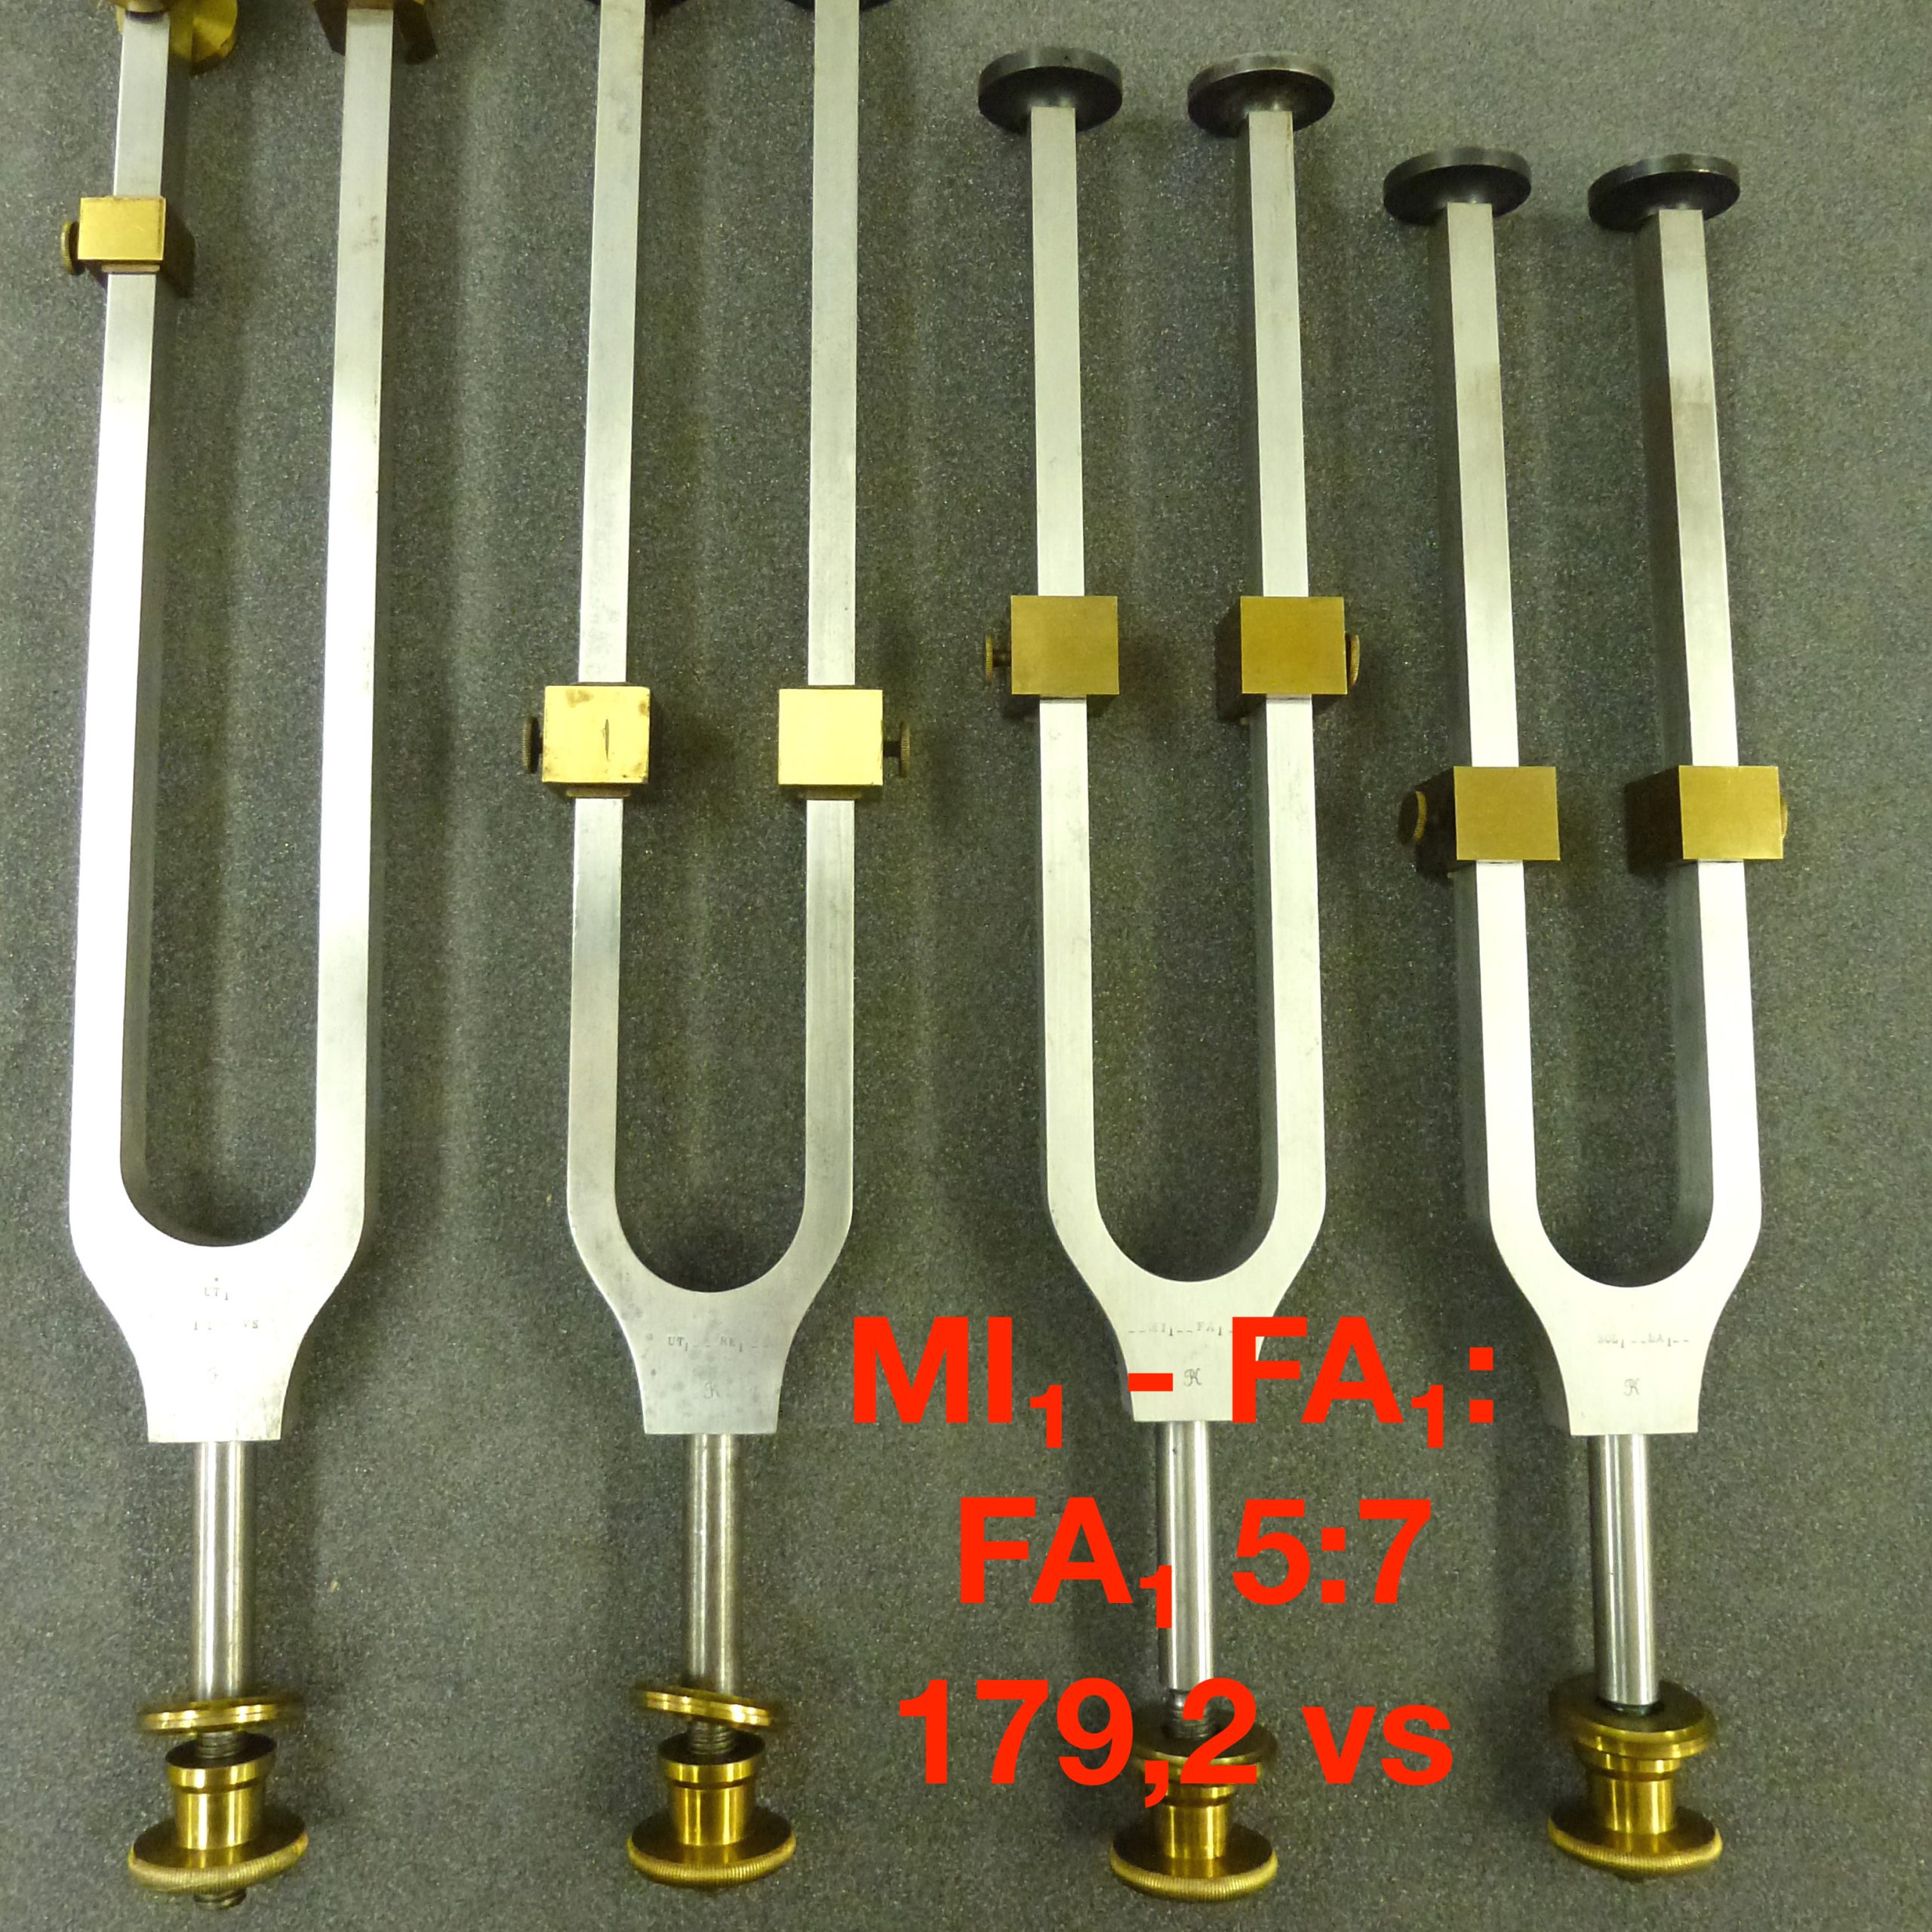 Tuning fork by Dr. R. König: MI₁ - FA₁: FA₁ 5:7